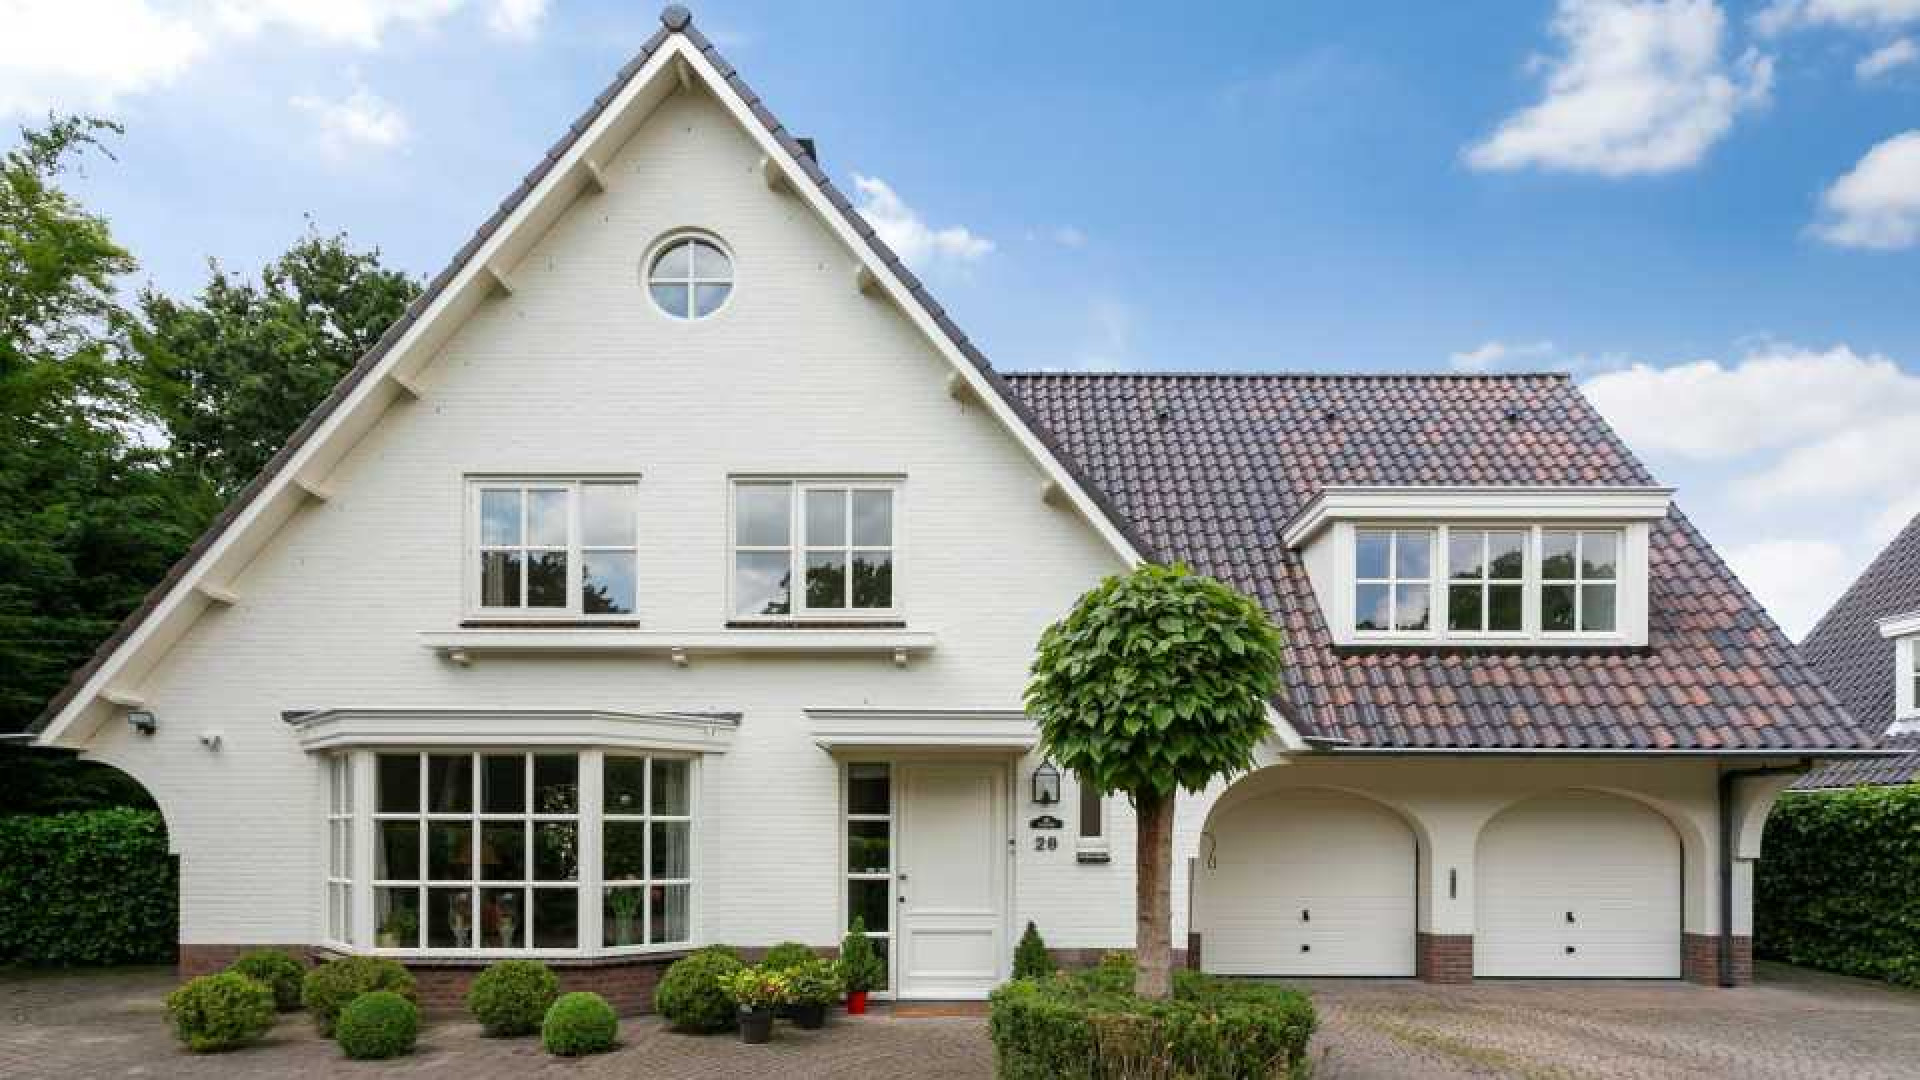 Ex vrouw van Dirk Kuijt koopt net als Dirk luxe villa op landgoed in Noordwijk. Zie foto's